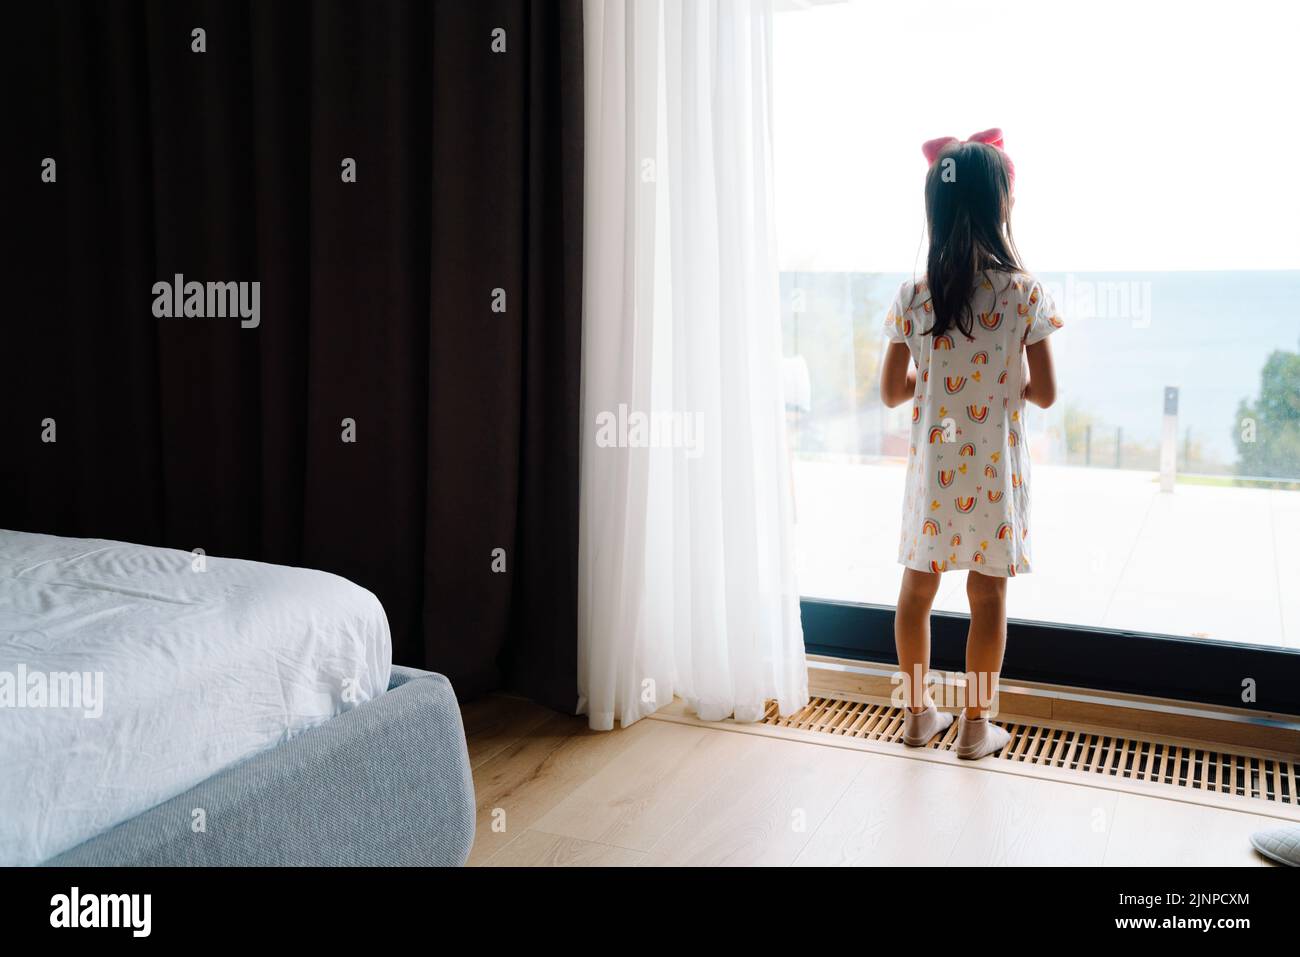 Chica asiática que usa ropa para el hogar mirando por la ventana en el dormitorio de la casa Foto de stock